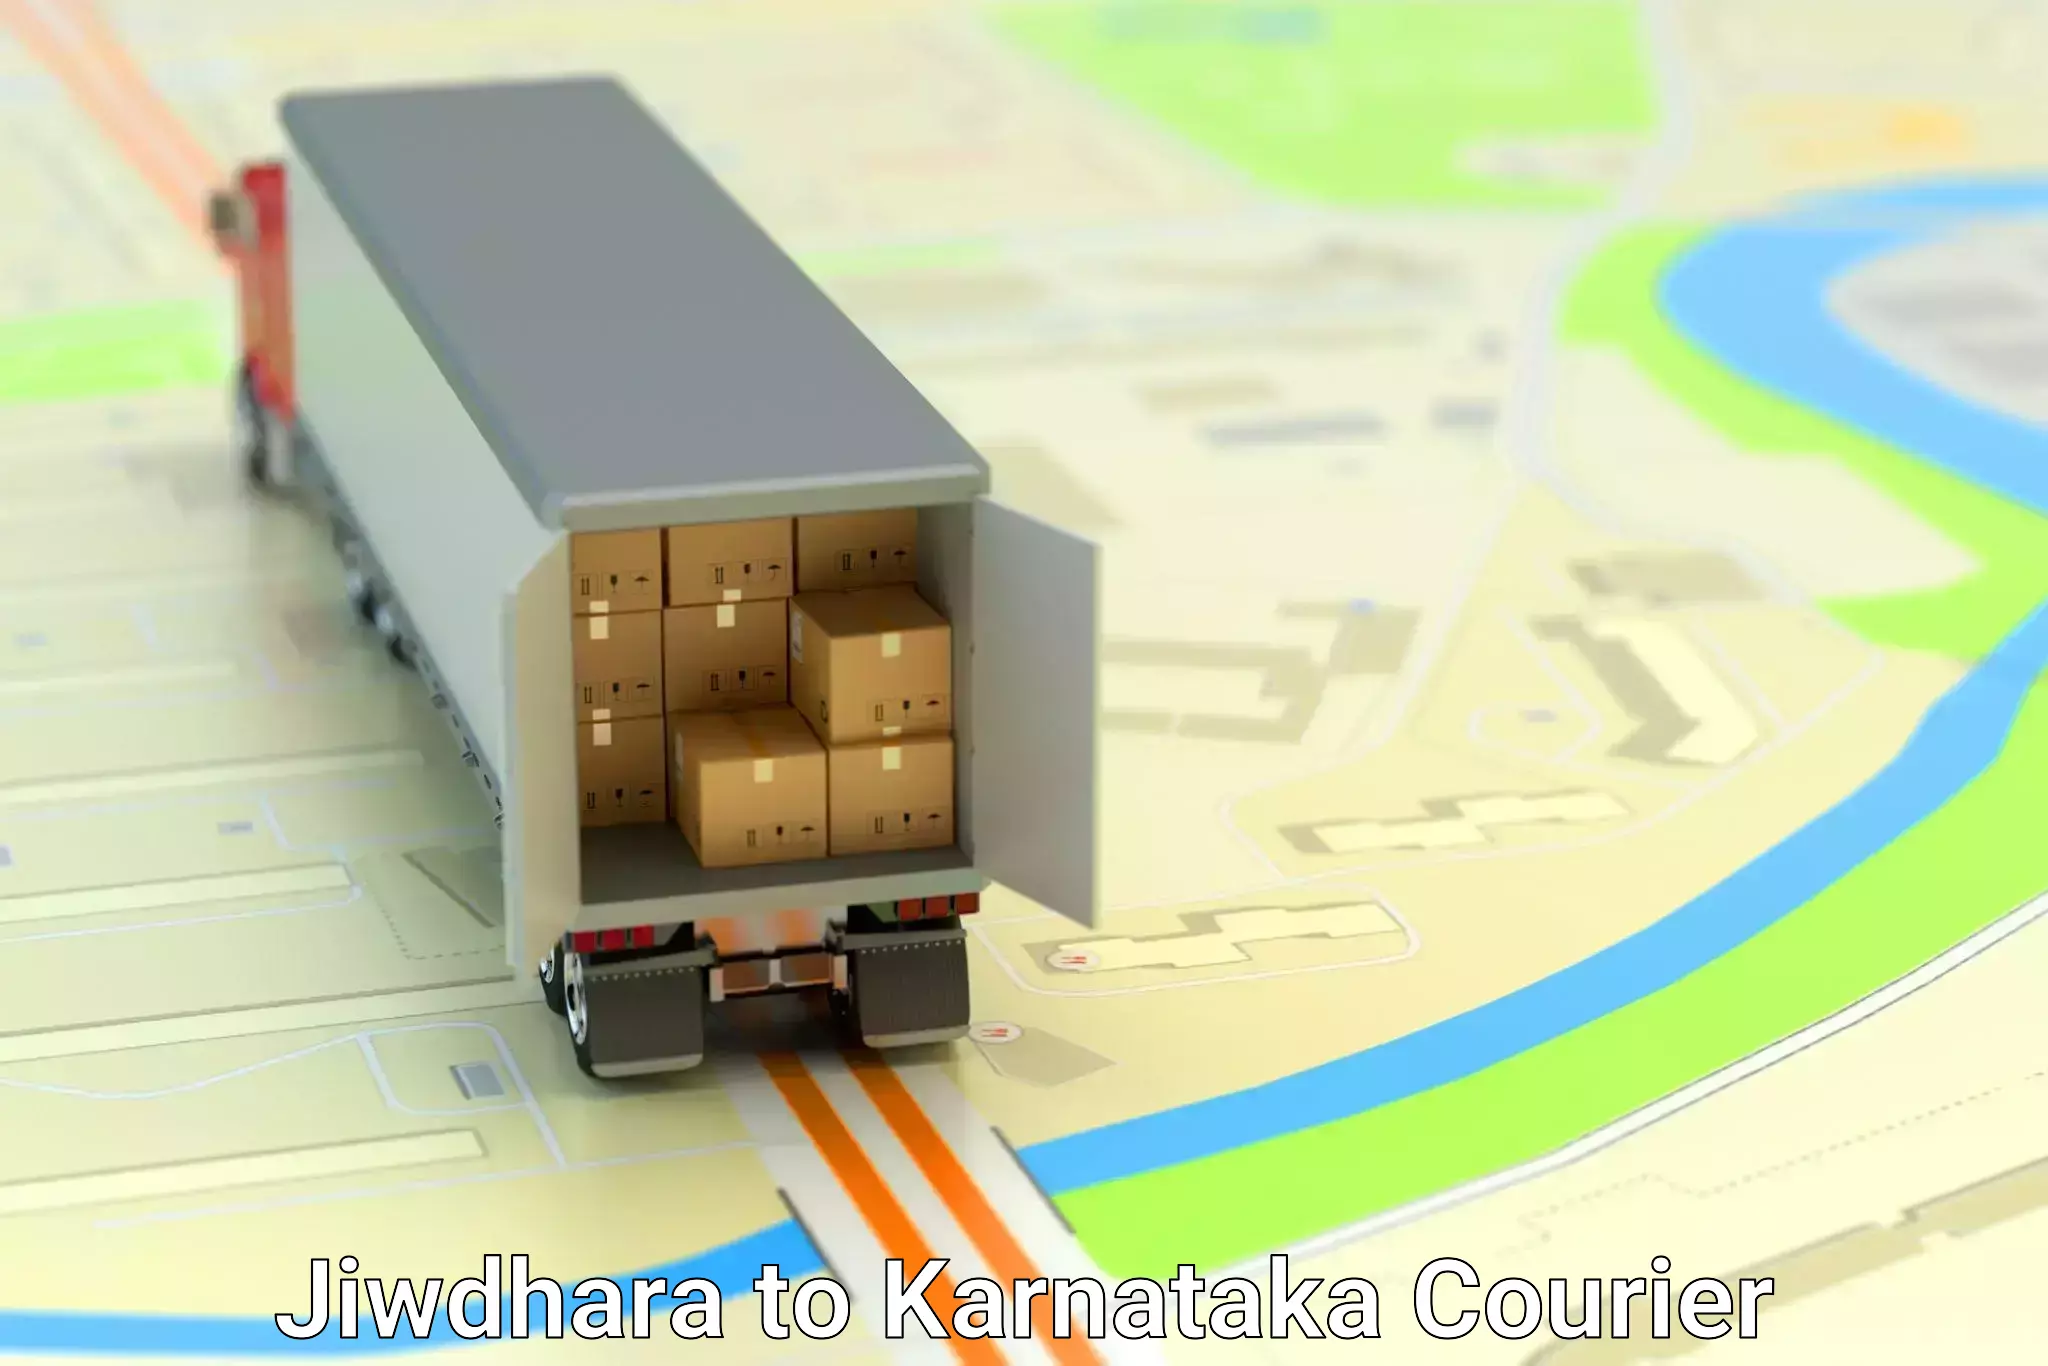 Furniture transport solutions Jiwdhara to Karnataka